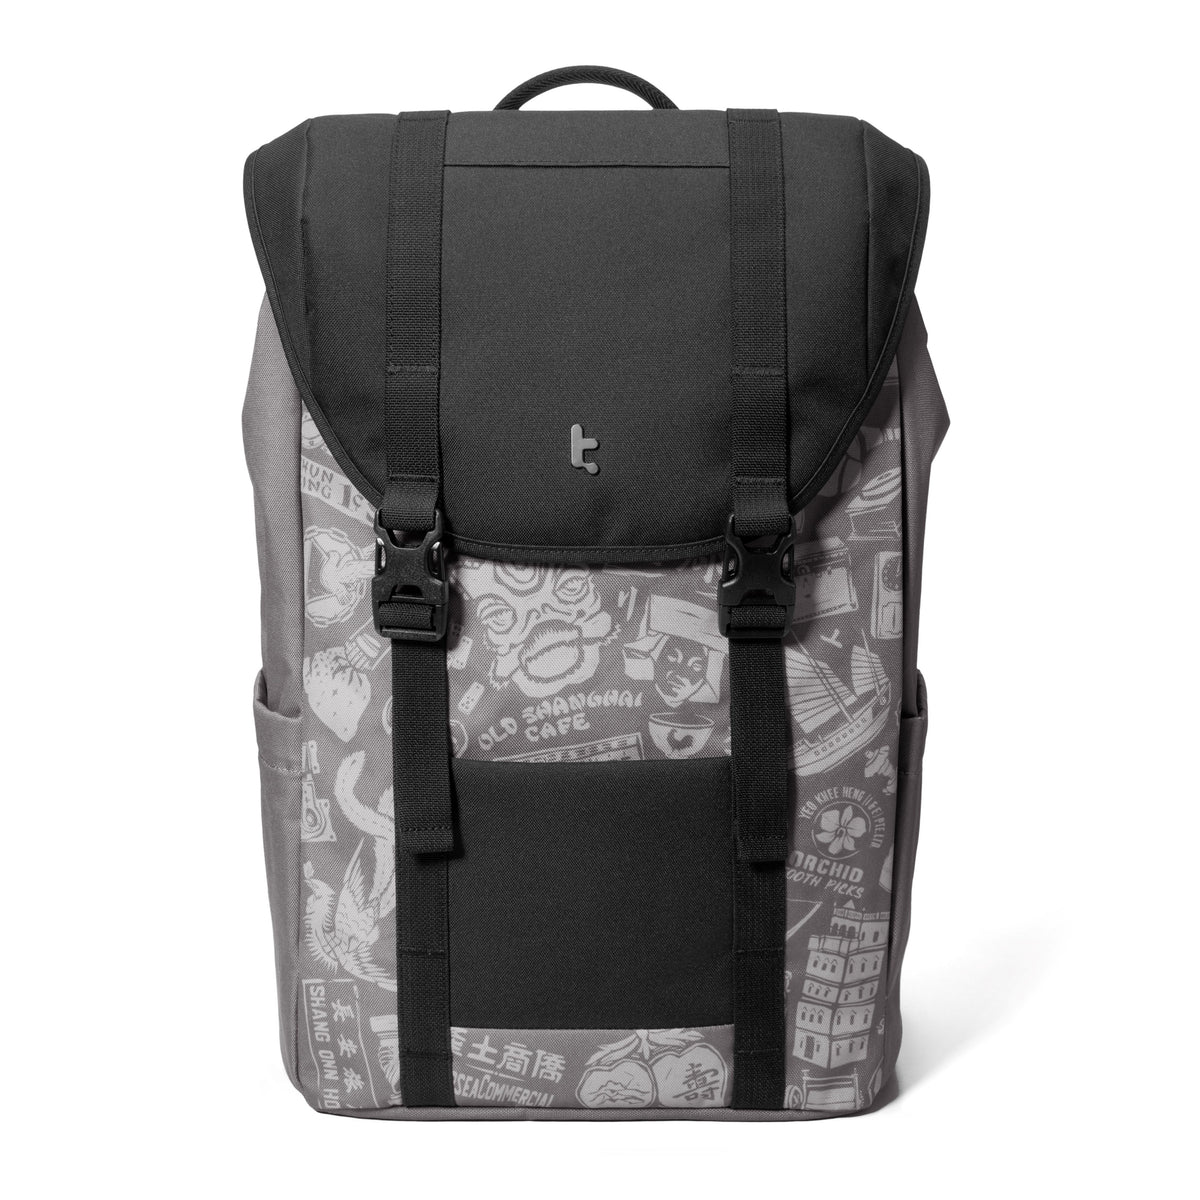 OCHM-TA1 22L Laptop Backpack 15.6-inch